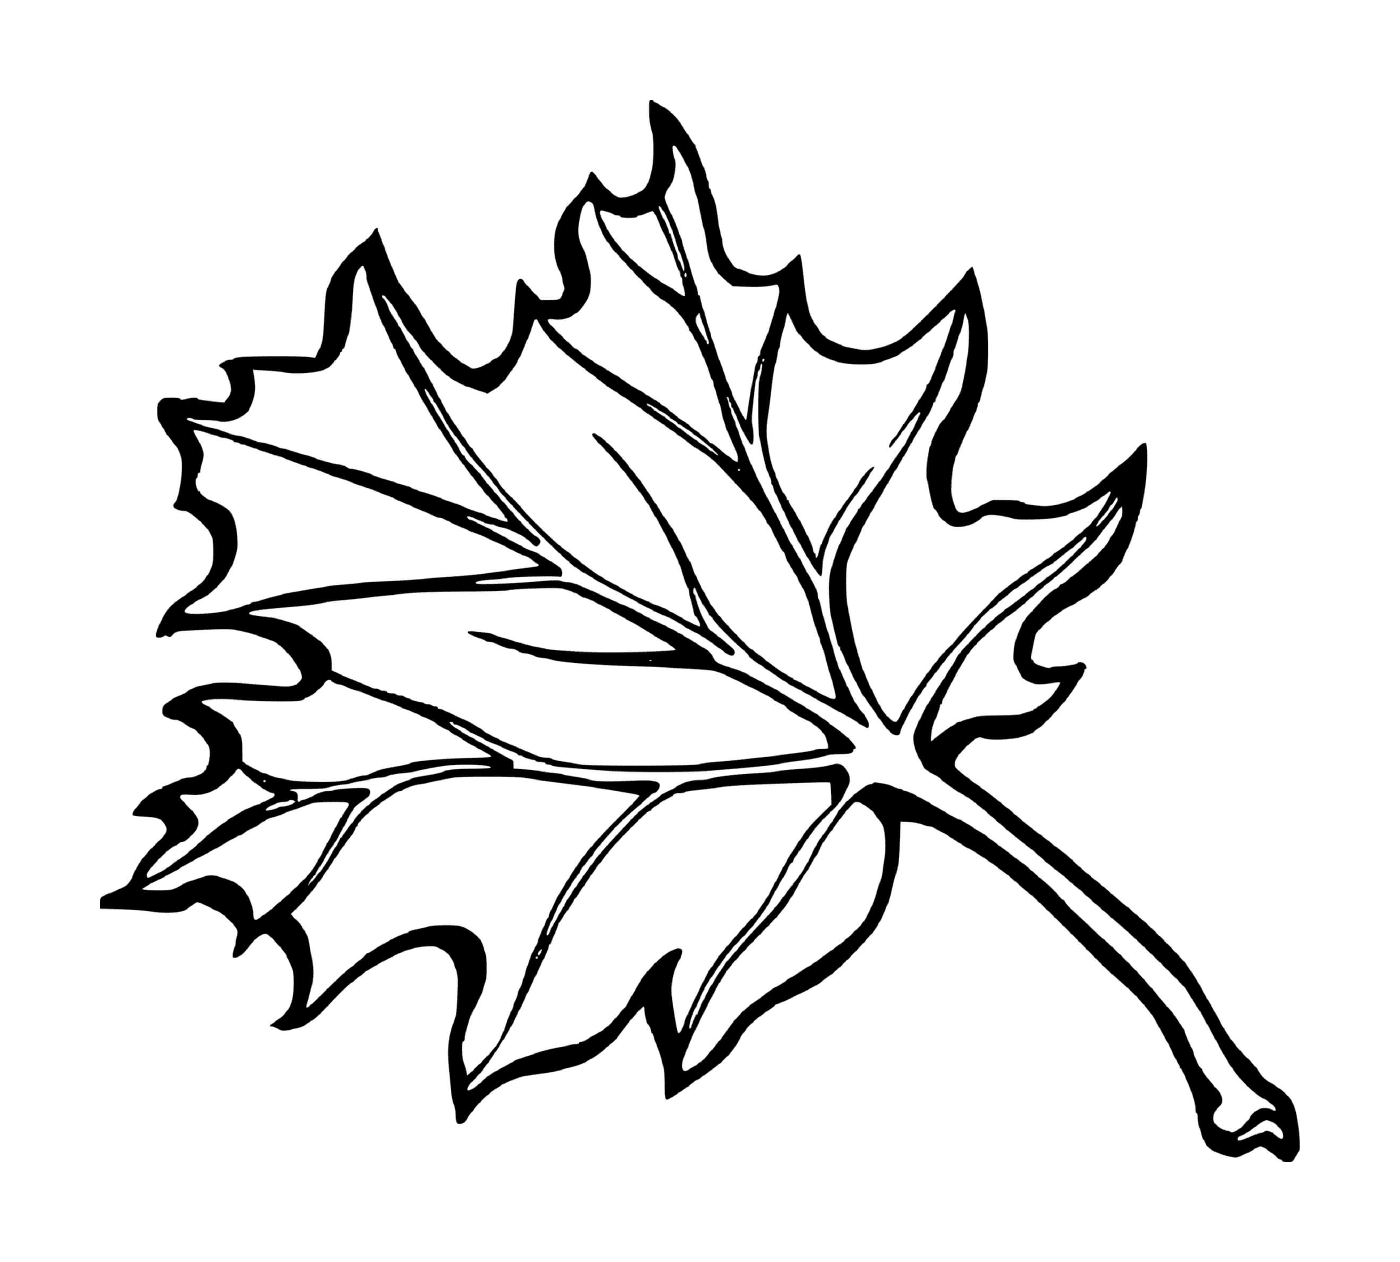  Autunno Maple Leaf del Canada 